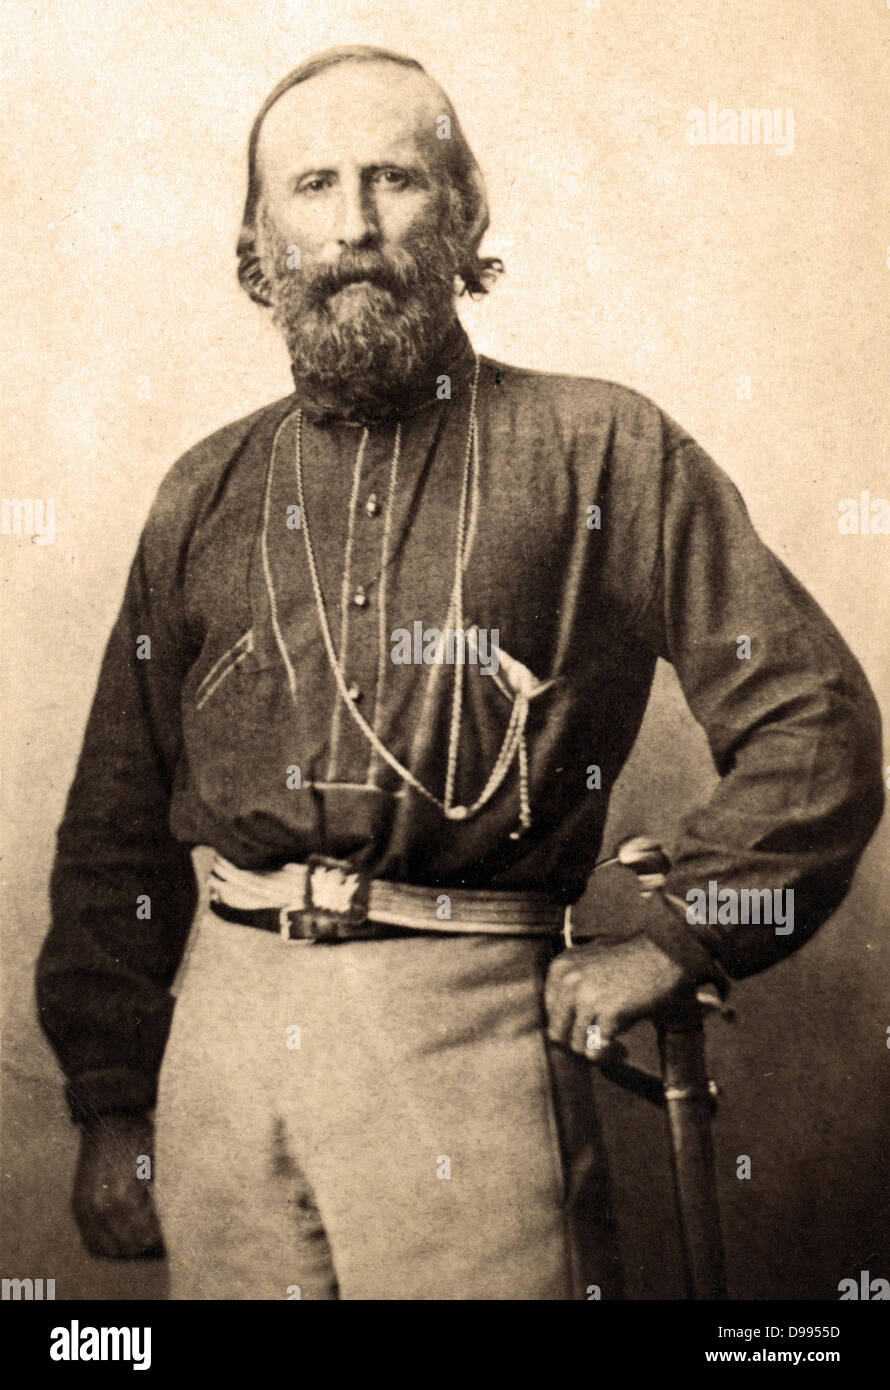 Giuseppe Garibaldi (1807-1882)à Naples, Italie, 1861. Soldat italien, homme politique et nationaliste. Portrait de trois-quarts debout face à face. Banque D'Images